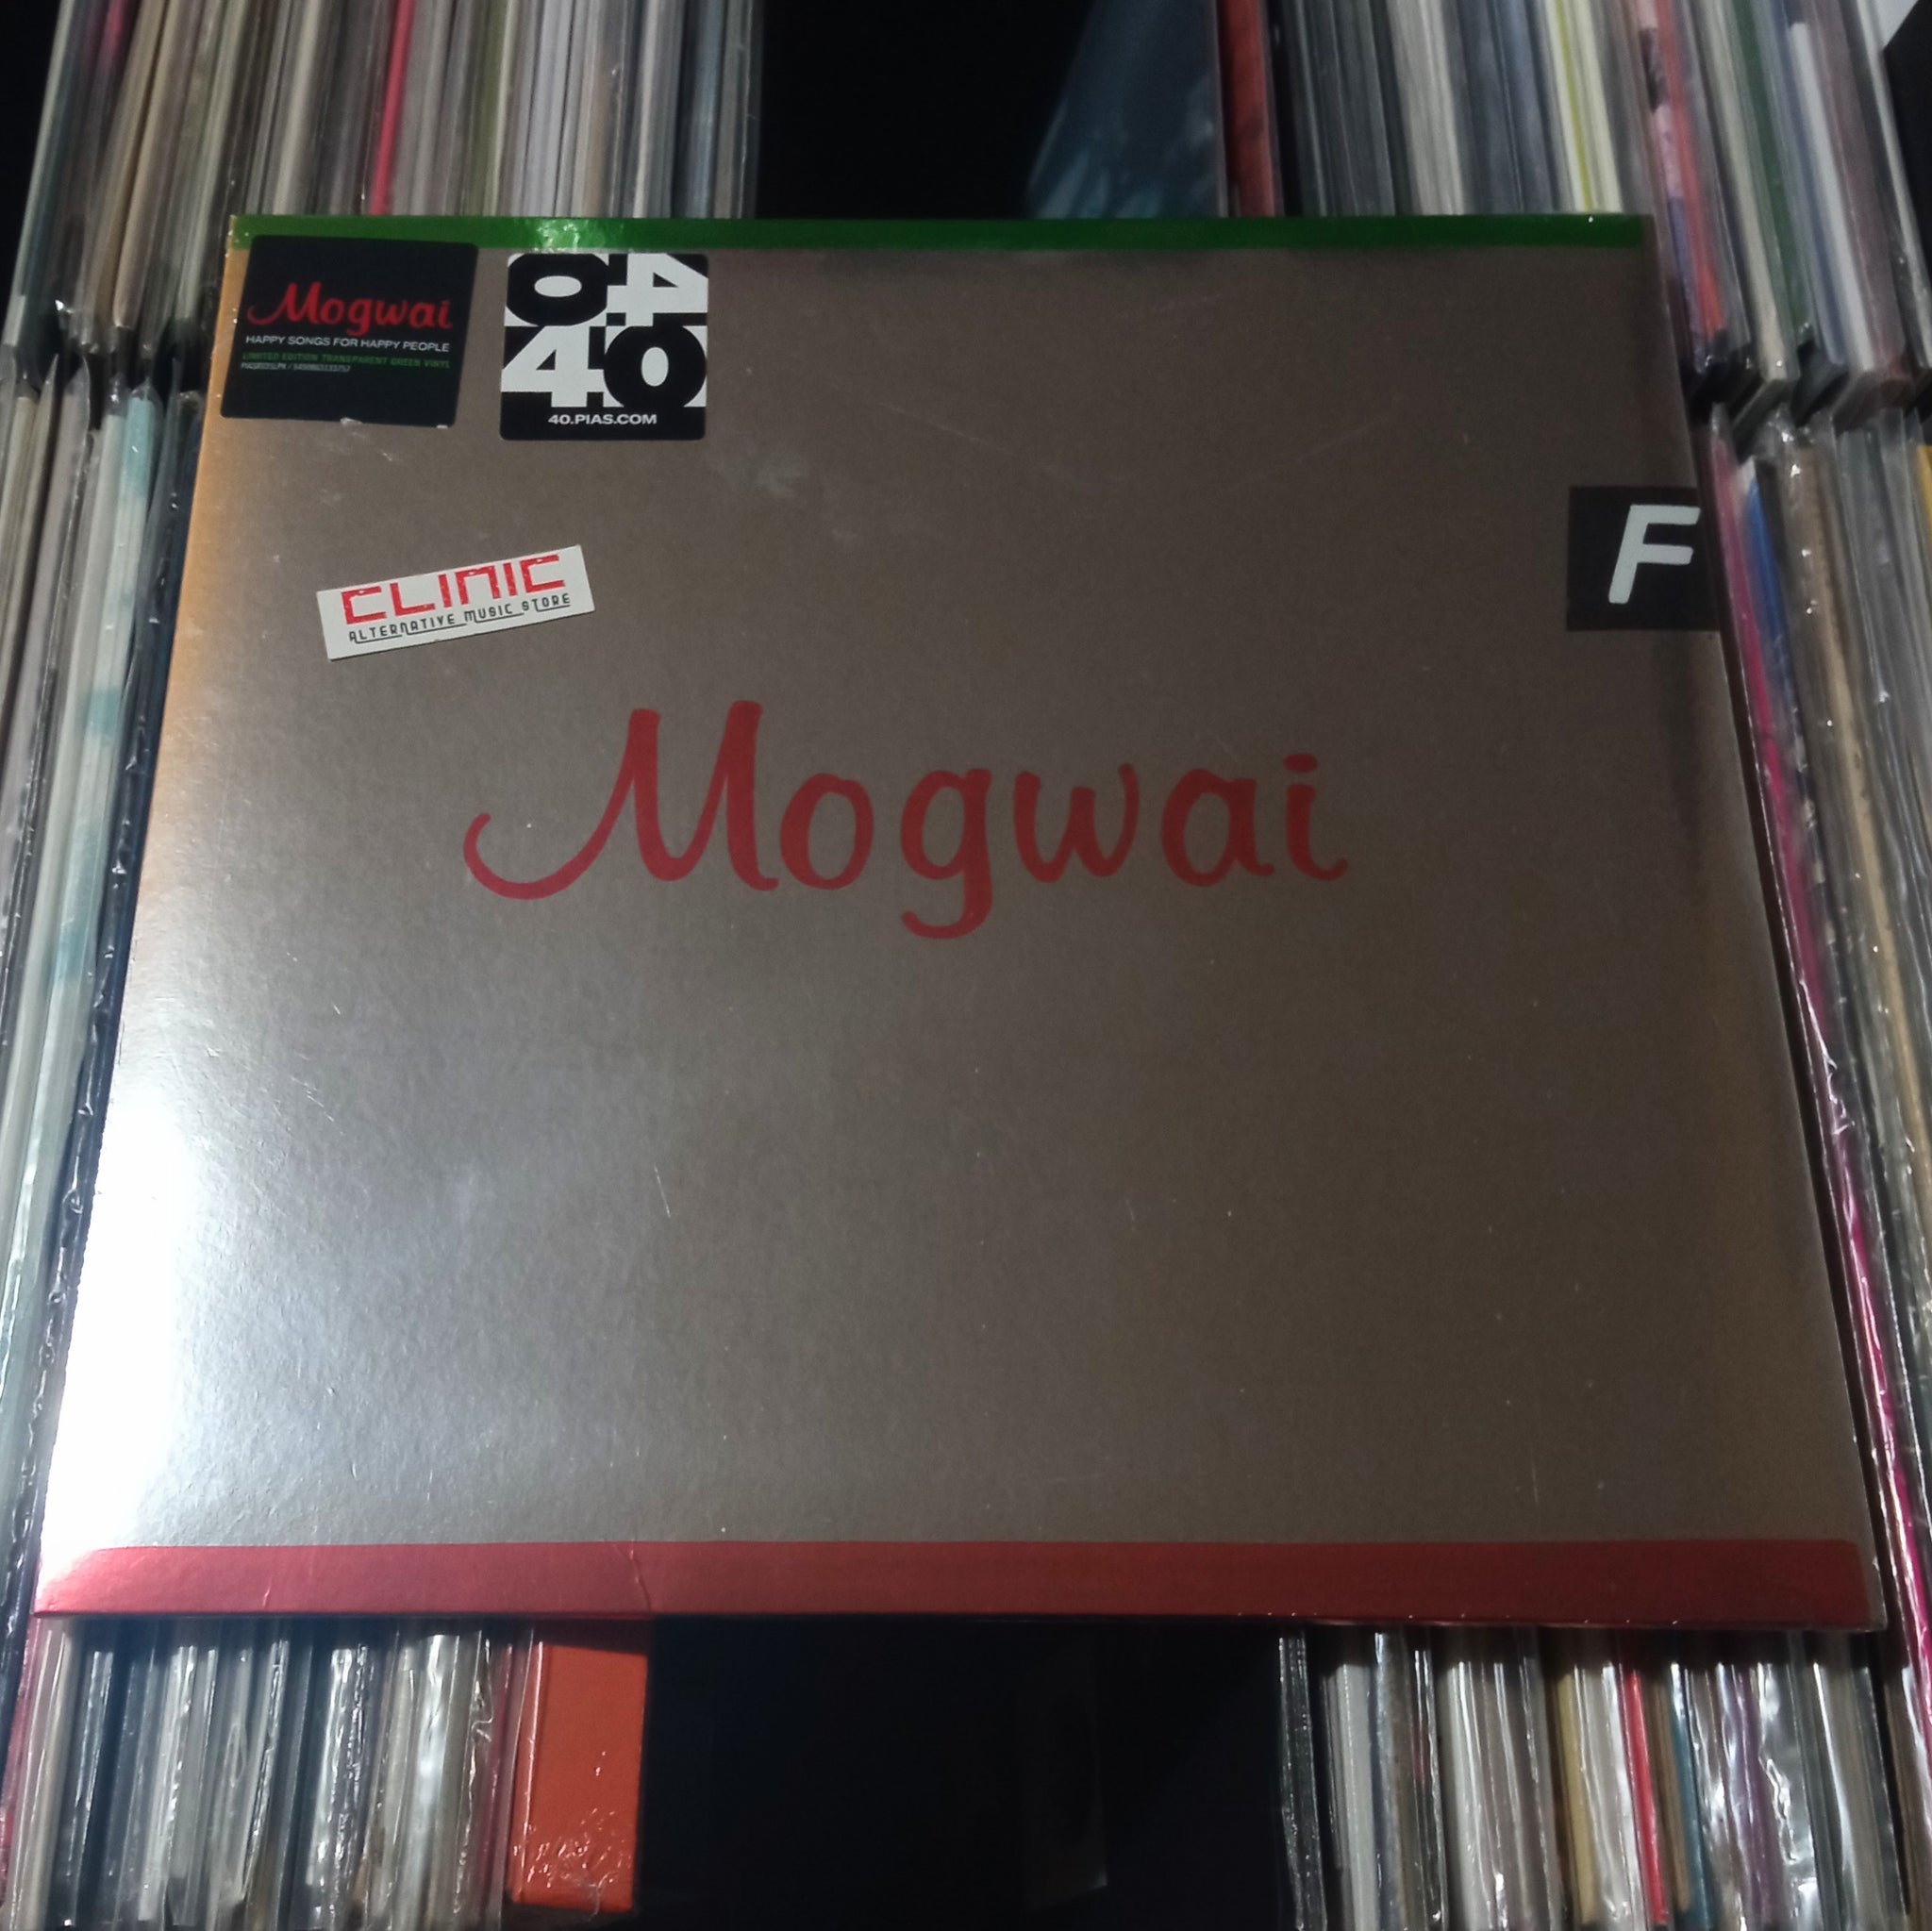 LP - MOGWAI - HAPPY SONGS FOR HAPPY PEOPLE (Indie Exclusive)